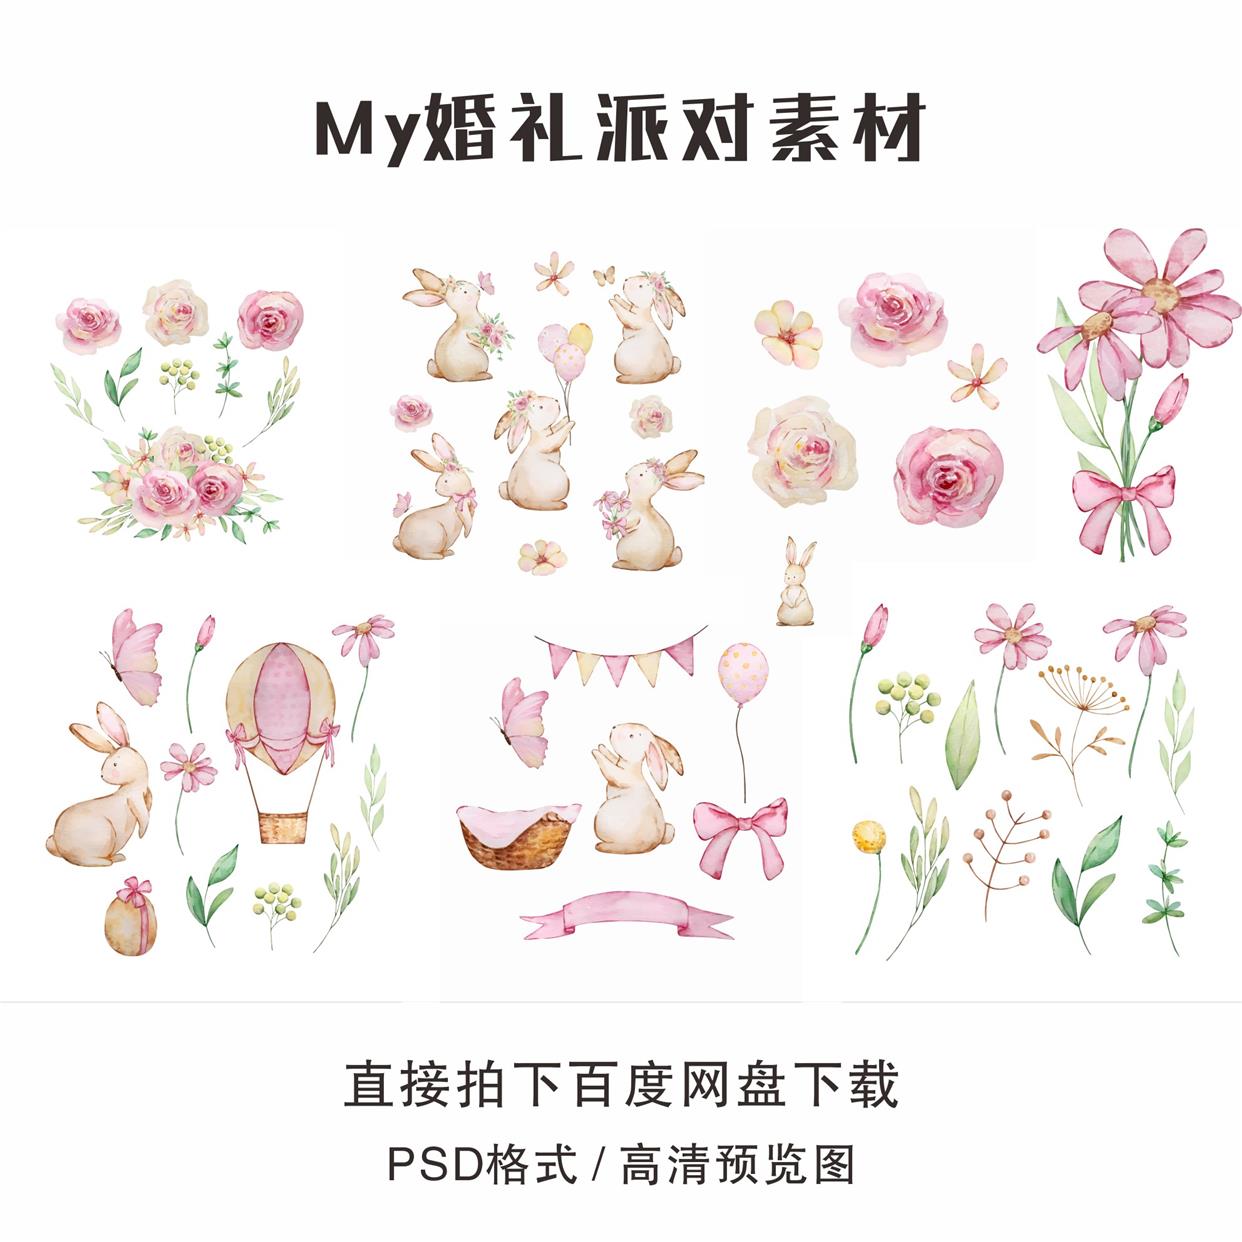 手绘水彩粉色可爱卡通兔子花朵热气球蝴蝶结生日宝宝宴插画素材AI